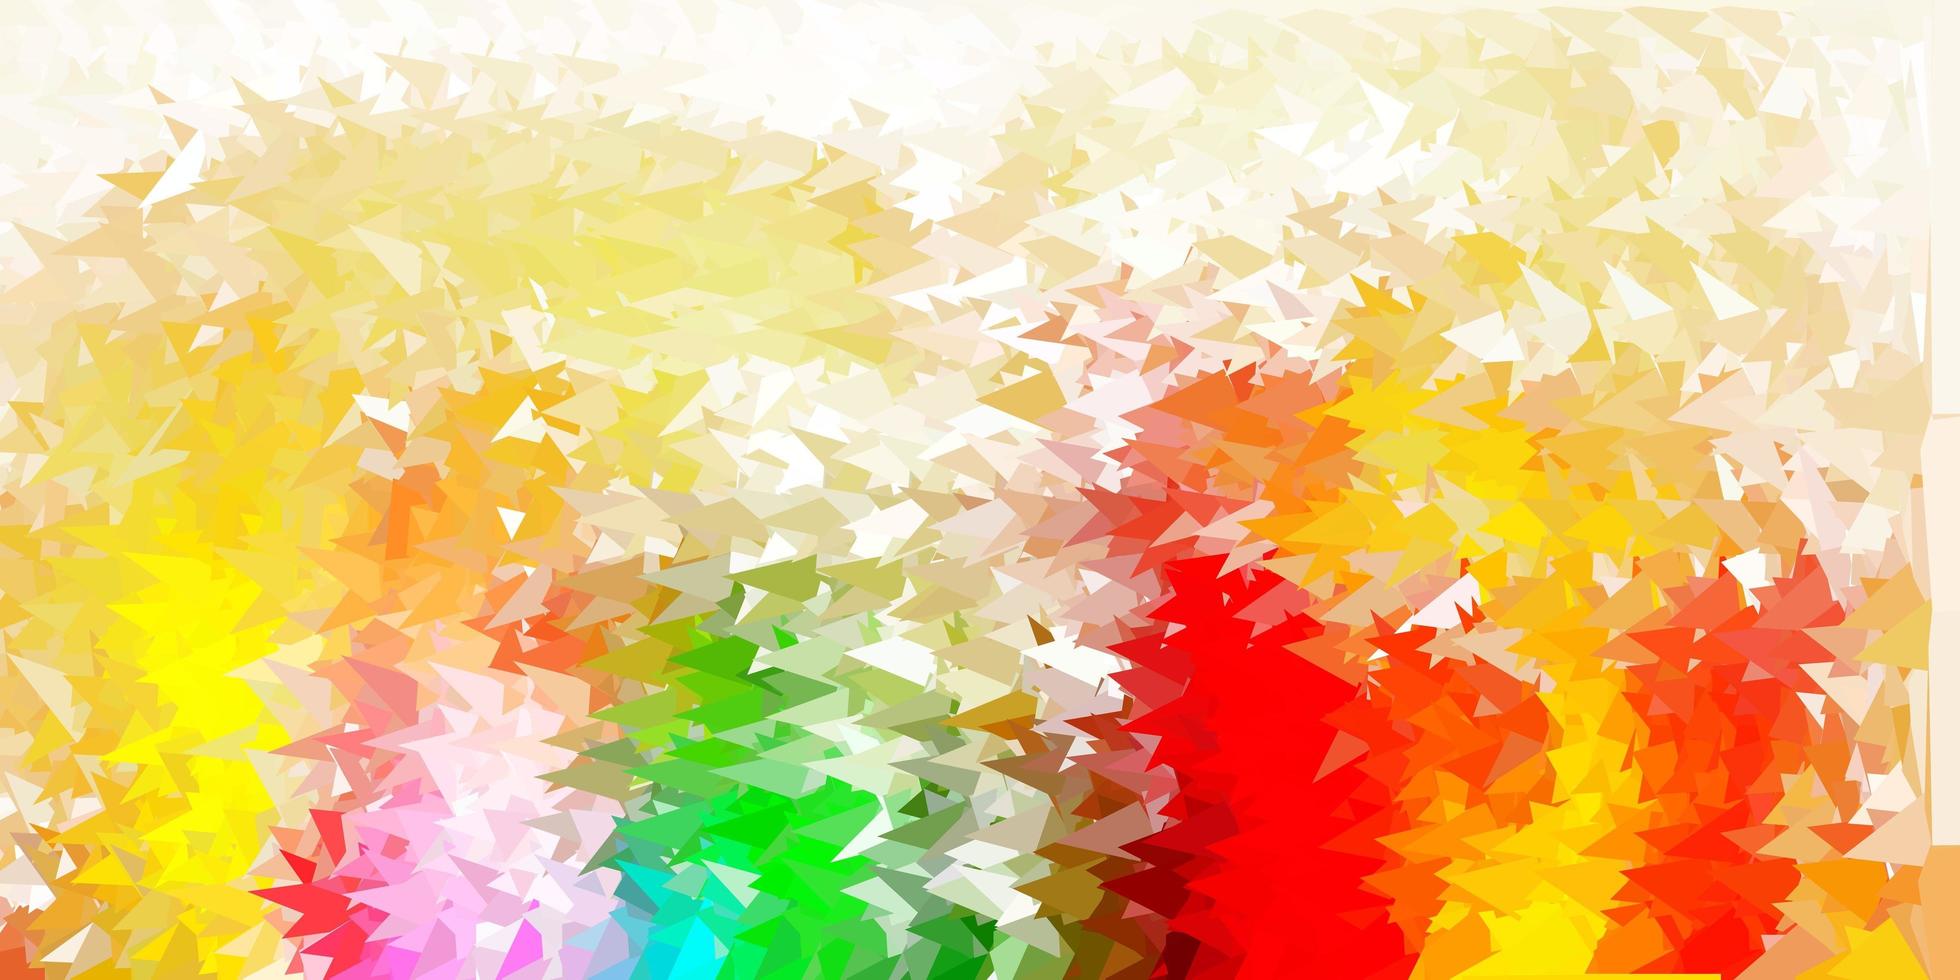 fond d'écran de polygone dégradé vecteur multicolore clair.